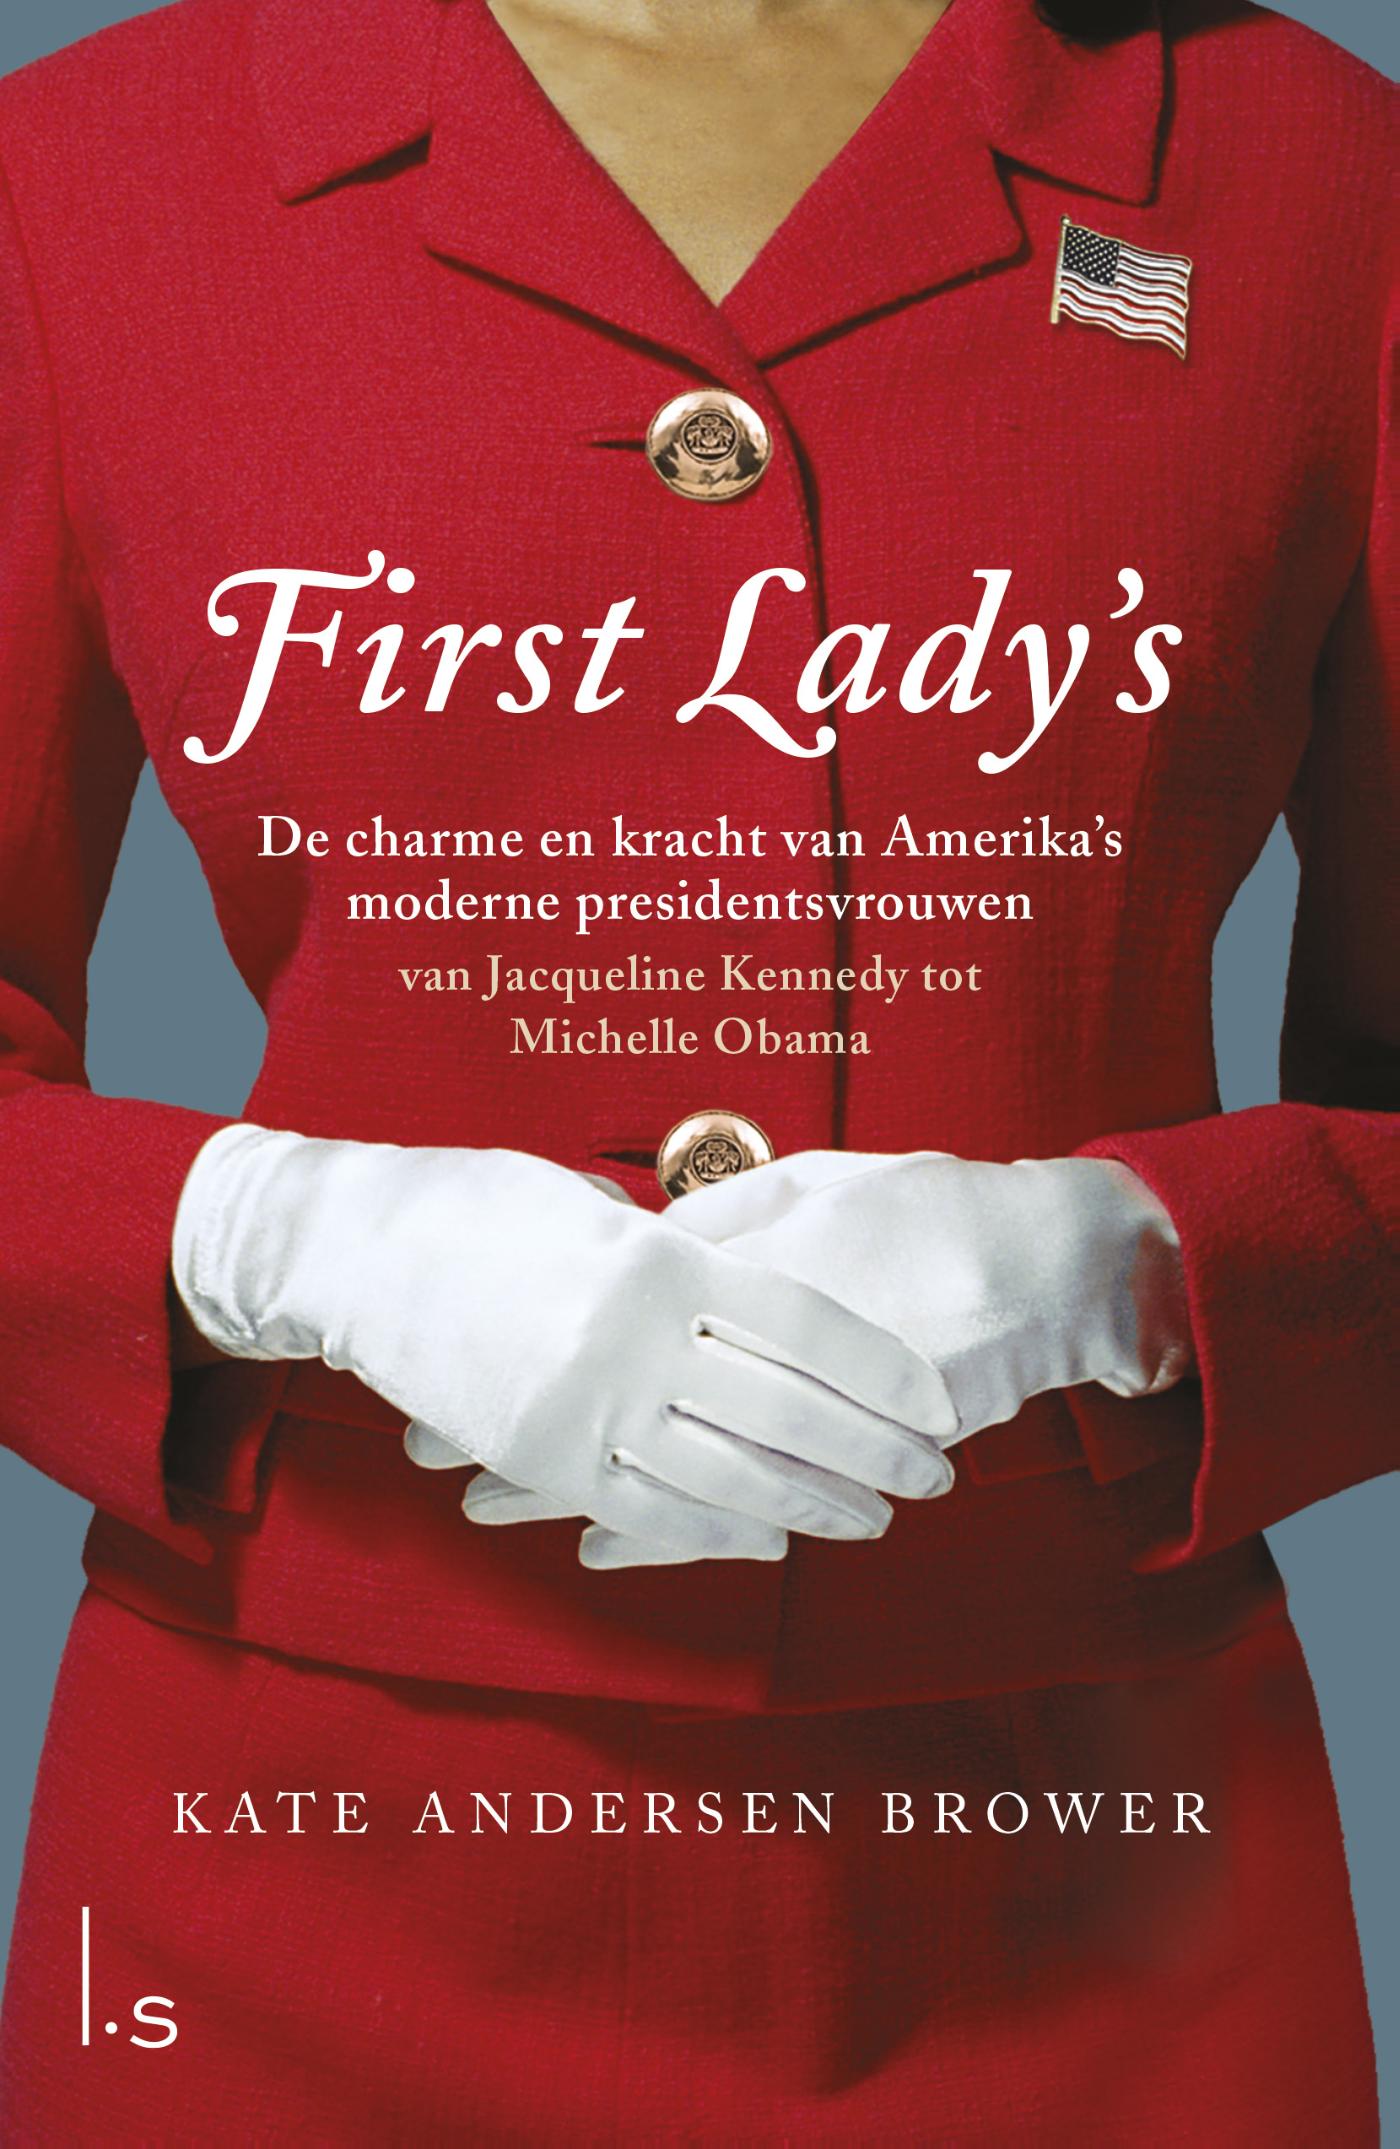 First Lady's. De vrouwen in het Witte Huis (Ebook)